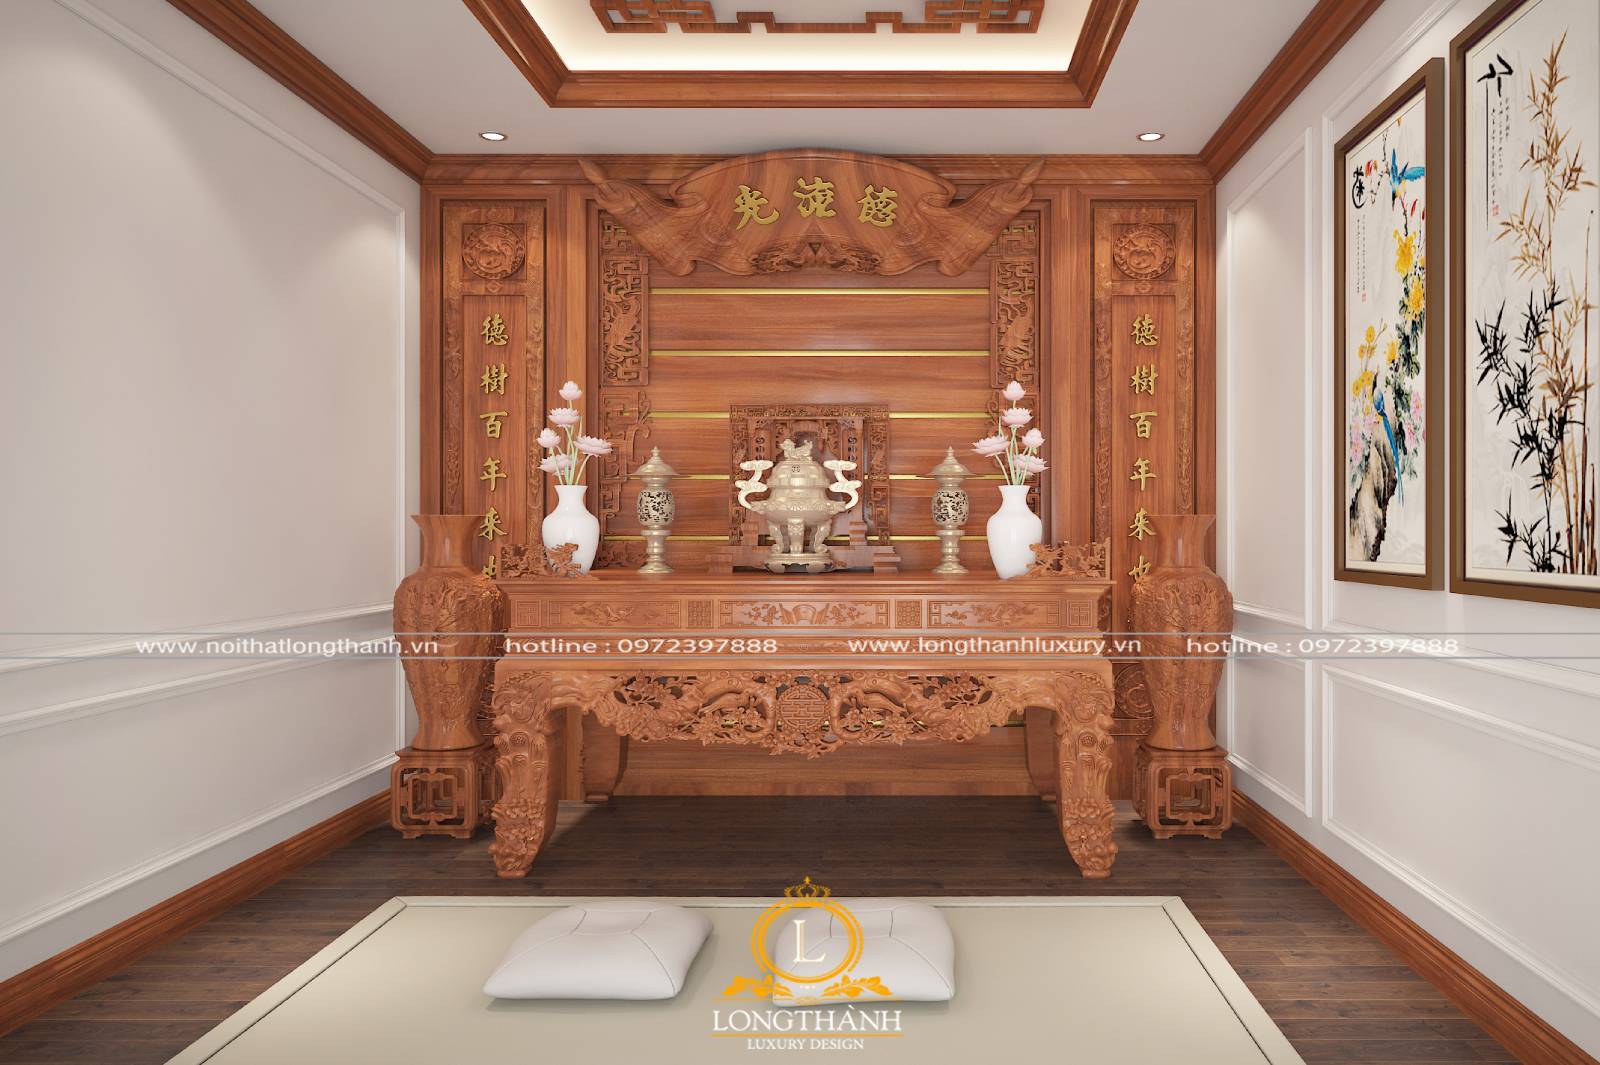 Nội thất phòng thờ được sử dụng từ chất liệu gỗ tự nhiên cao cấp